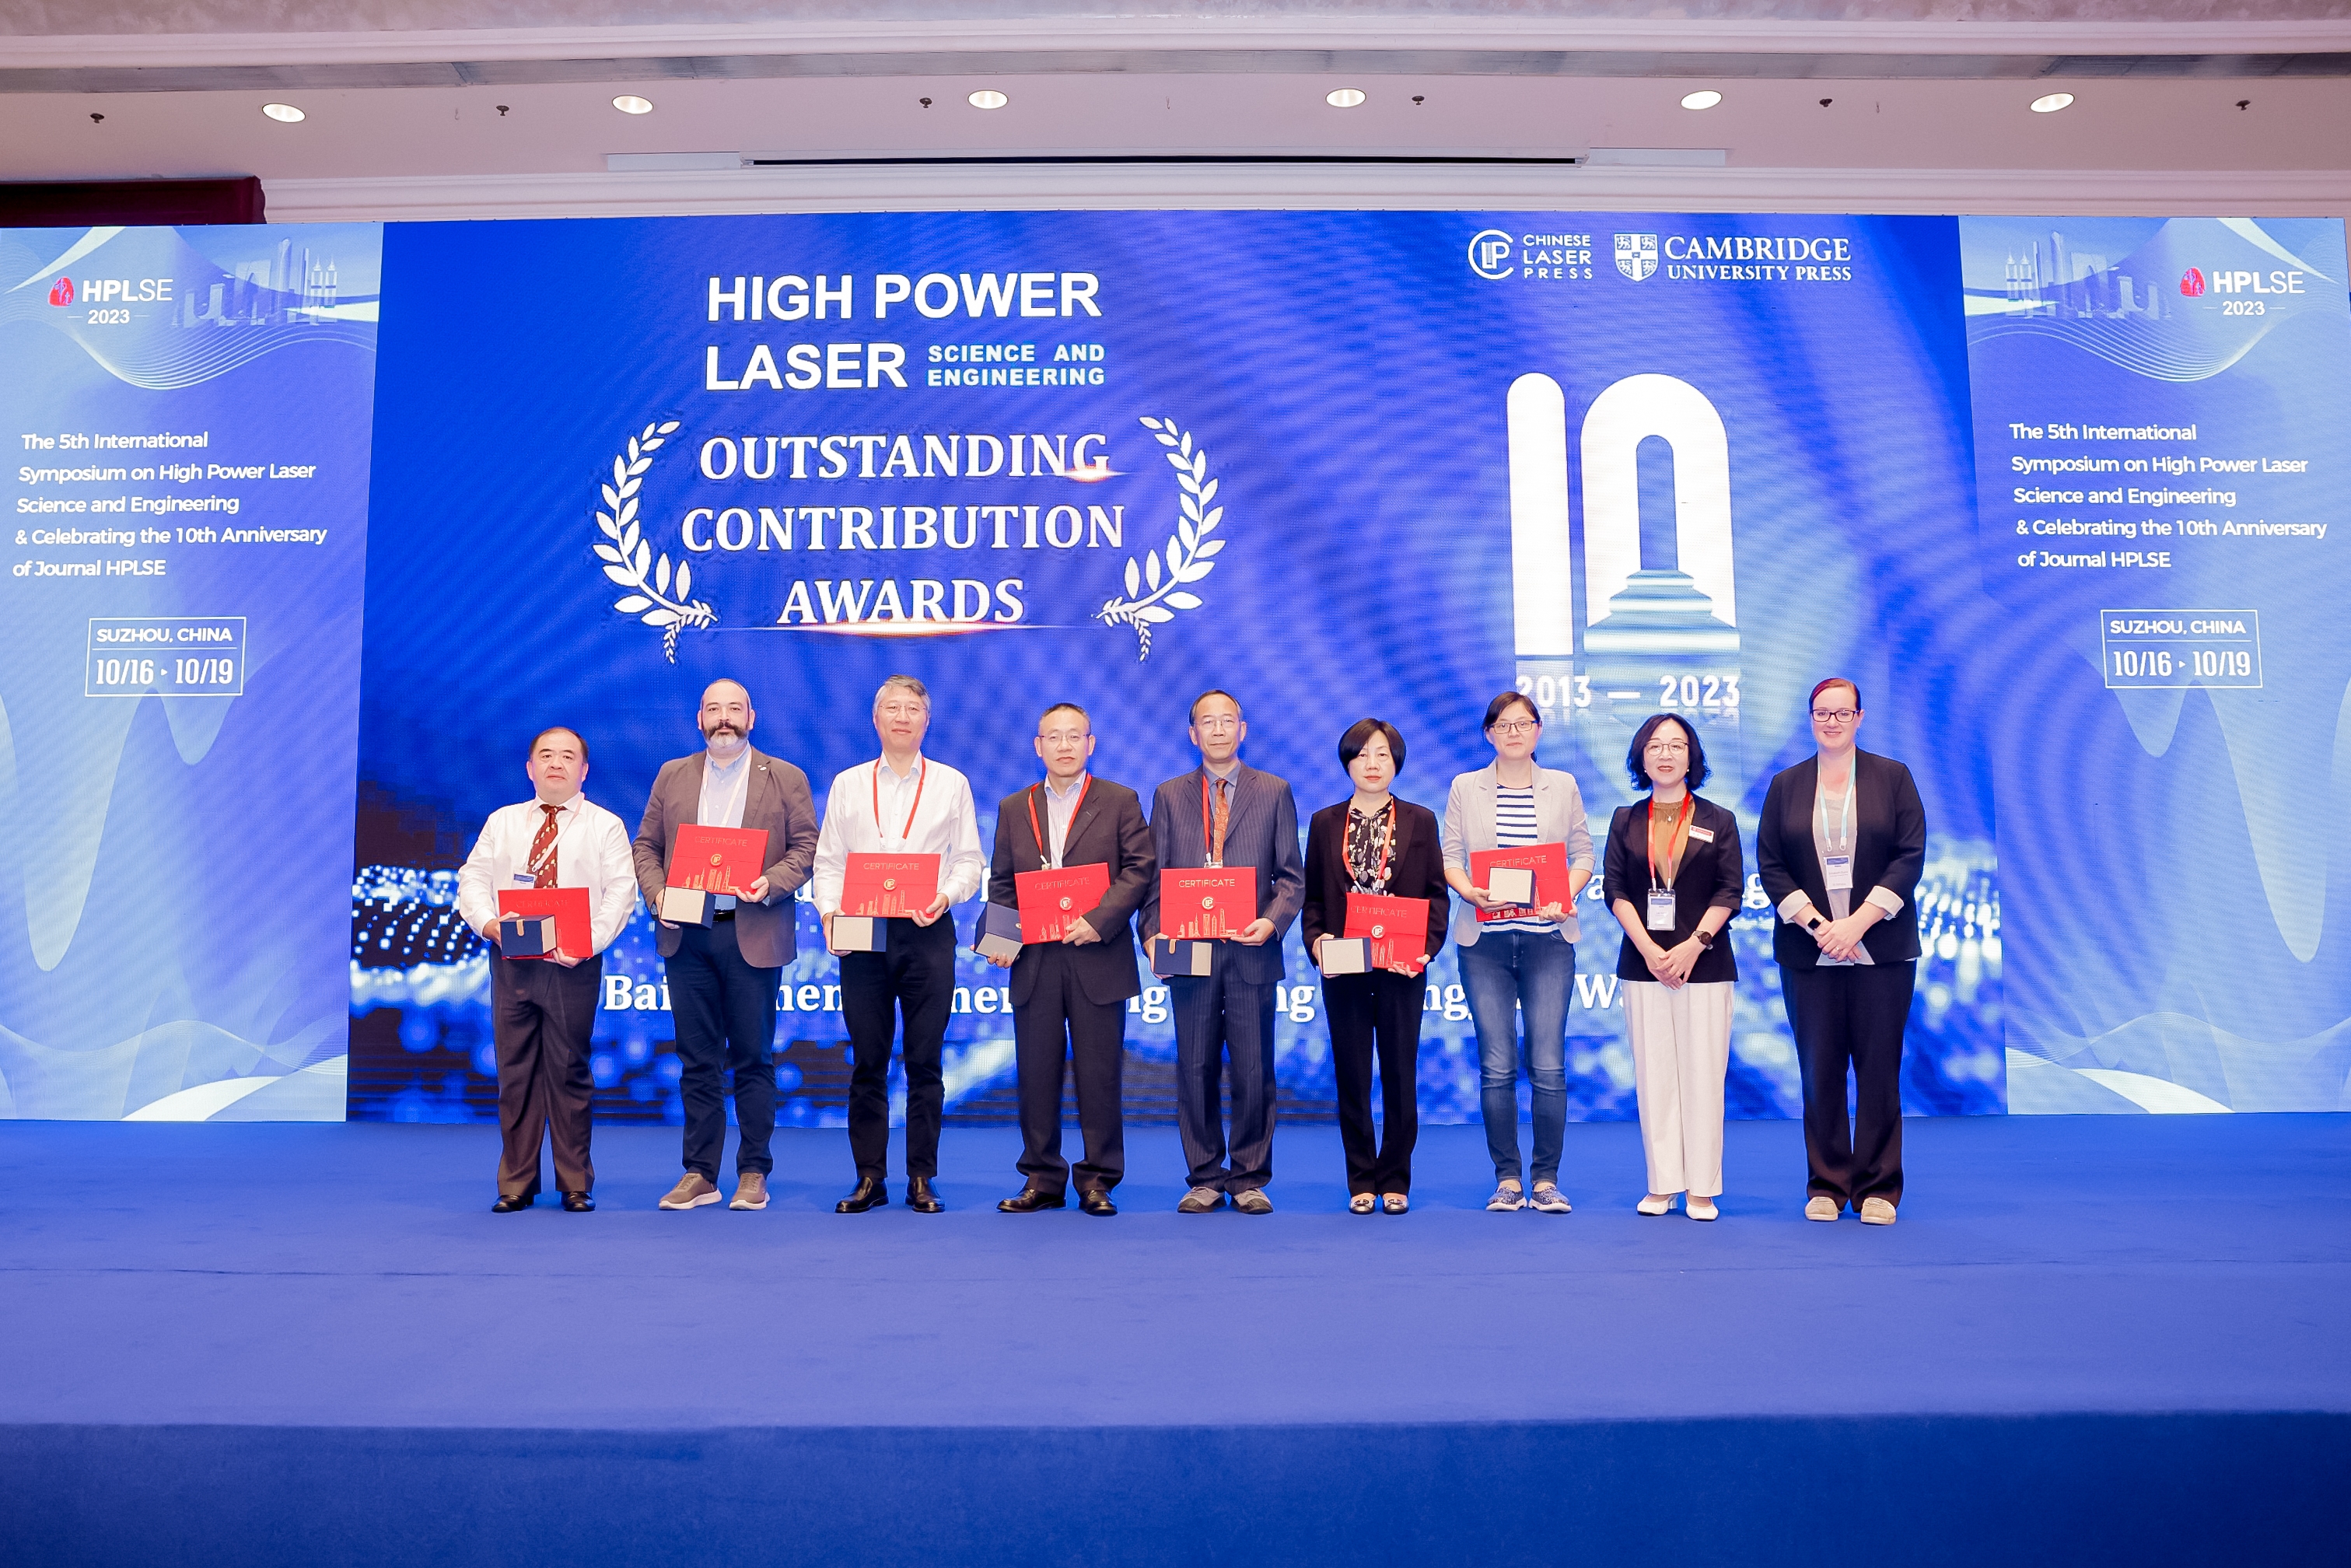 Award winners in attendance (Left to right: Jianqiang Zhu, Ioan Dancus, Yutong Li, Zhengming Sheng, Baifei Shen, Xiaoyan Liang, Yingying Wang, Lei Yang, Elizabeth Dunn)